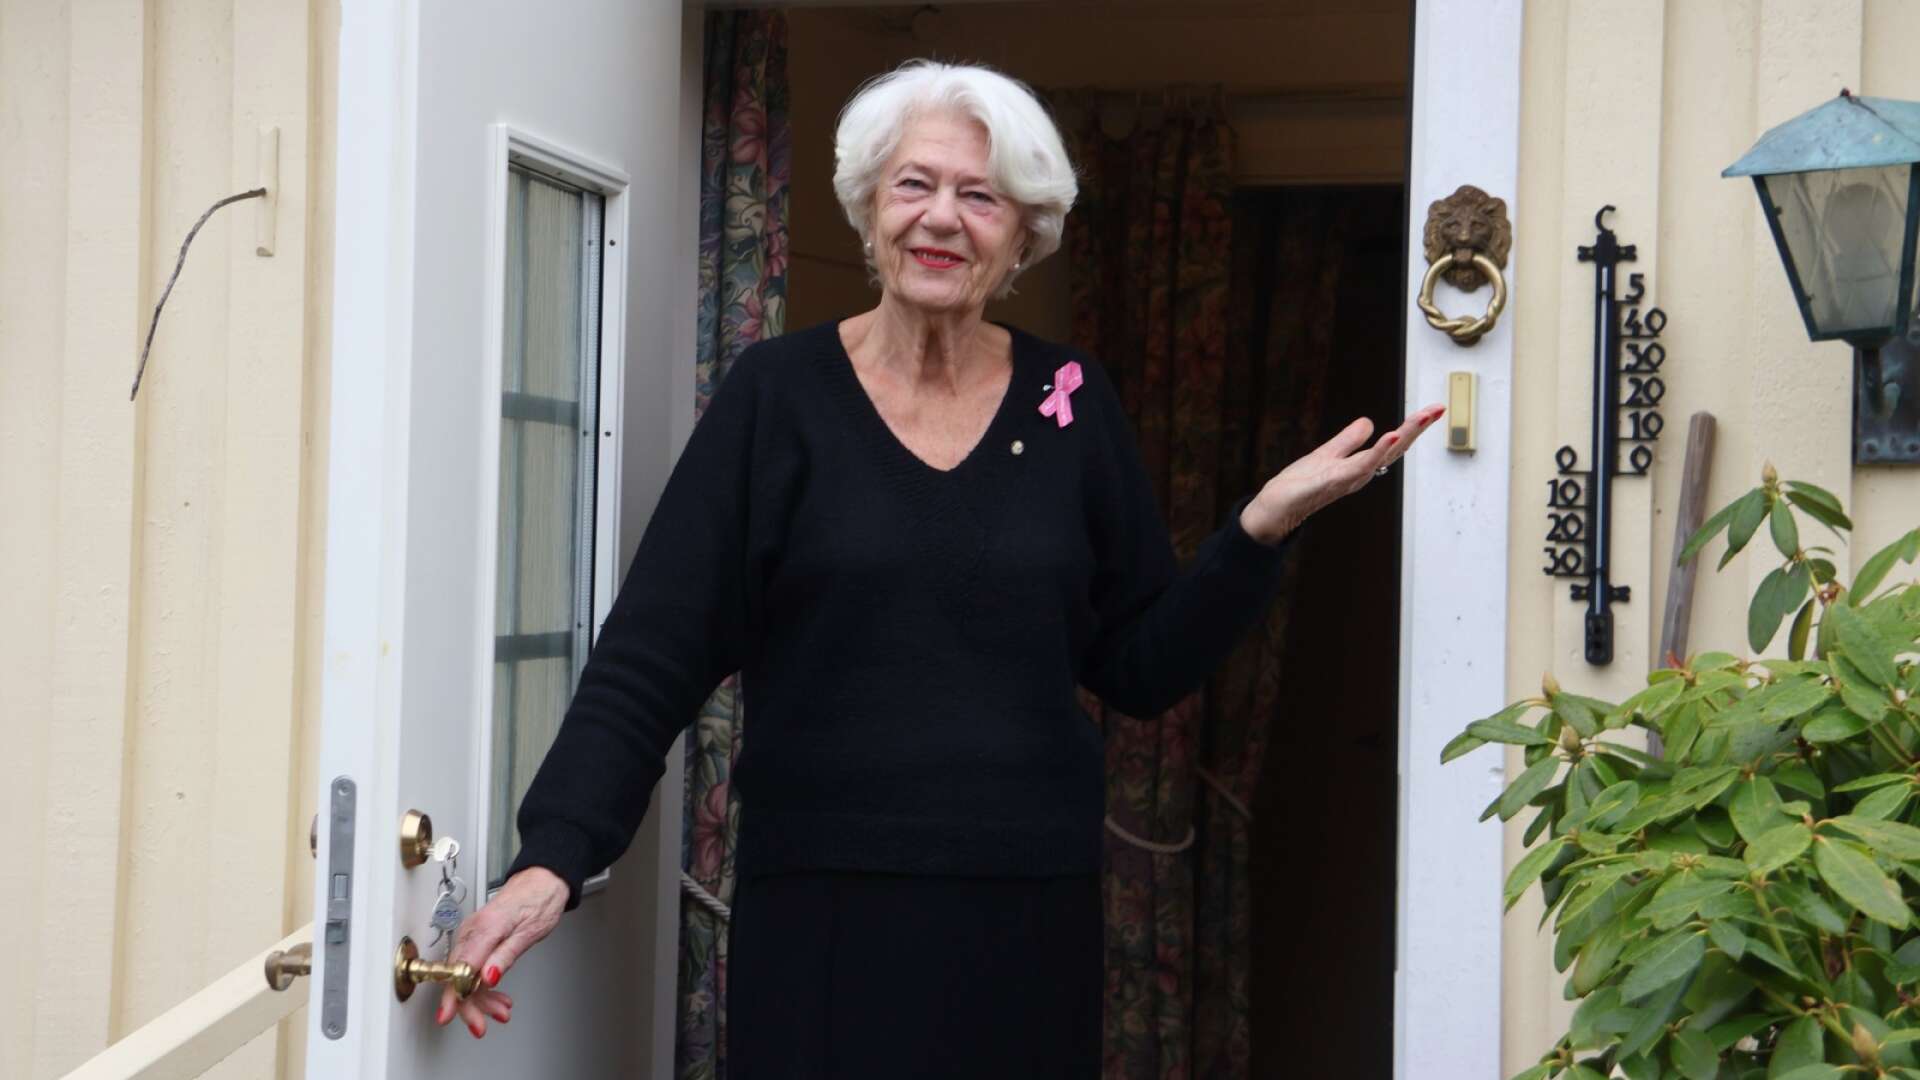 Lena bjuder in till öppet hus på sitt 80-årsjubileum.